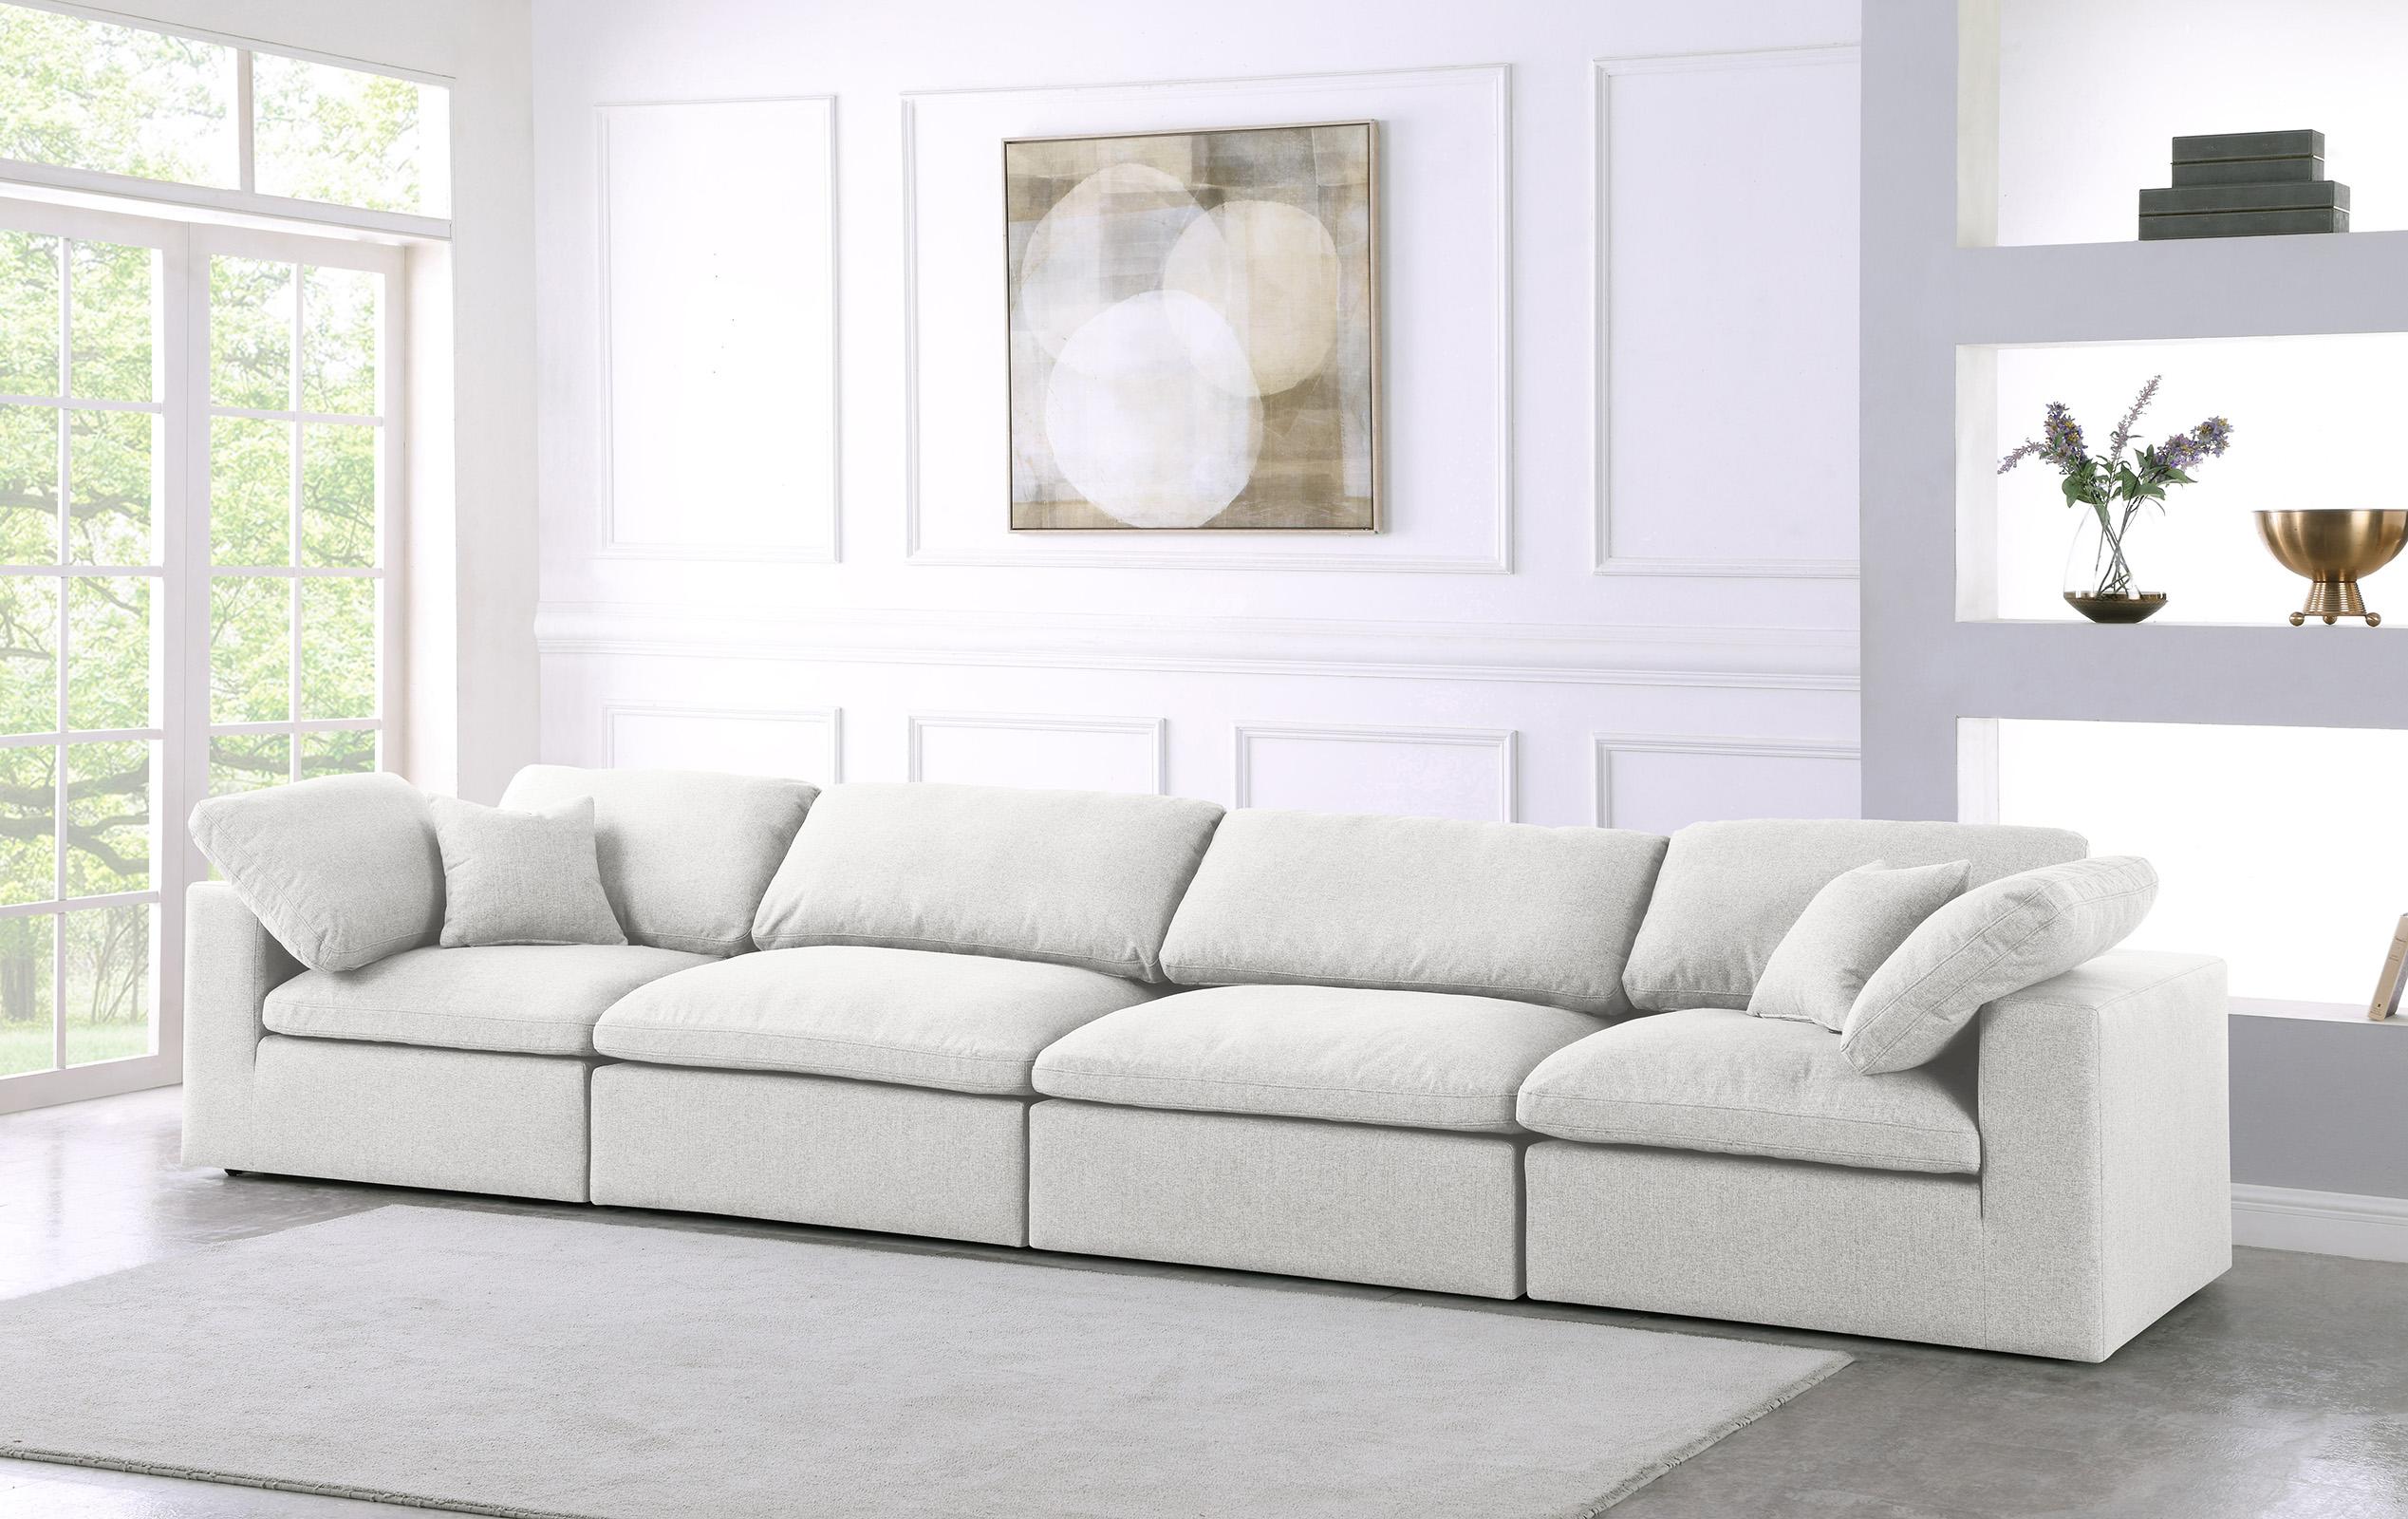 

    
Serene Cream Linen Textured Fabric Deluxe Comfort Modular Sofa S158 Meridian
